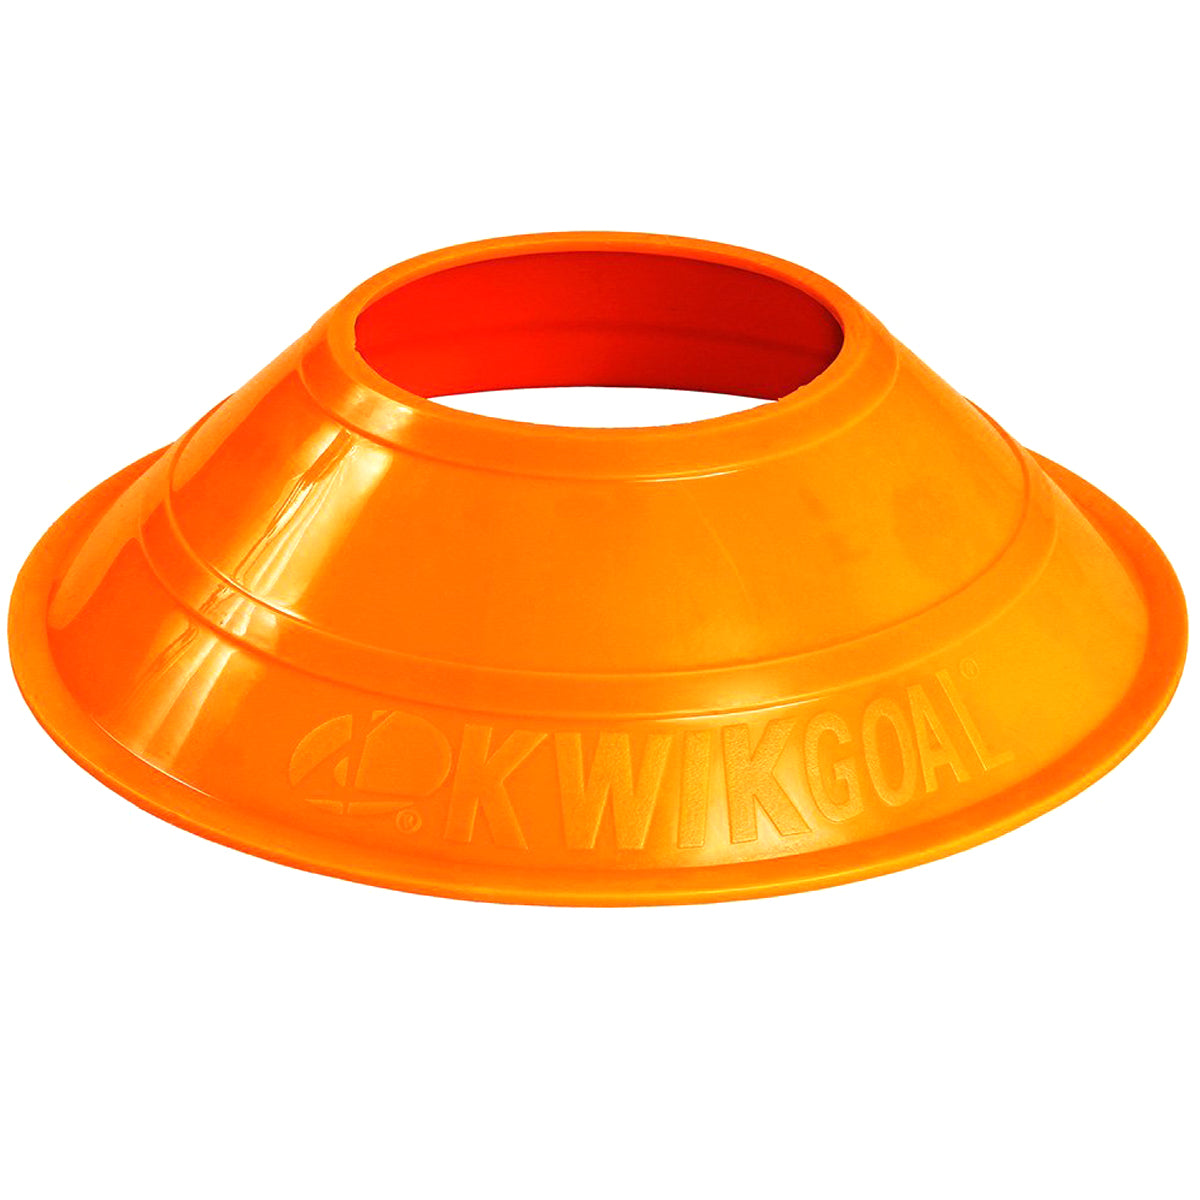 Kwikgoal Mini Disc Cones Soccer Coaching Equipment | 6A14 Field equipment Kwikgoal Hi-Vis Orange 